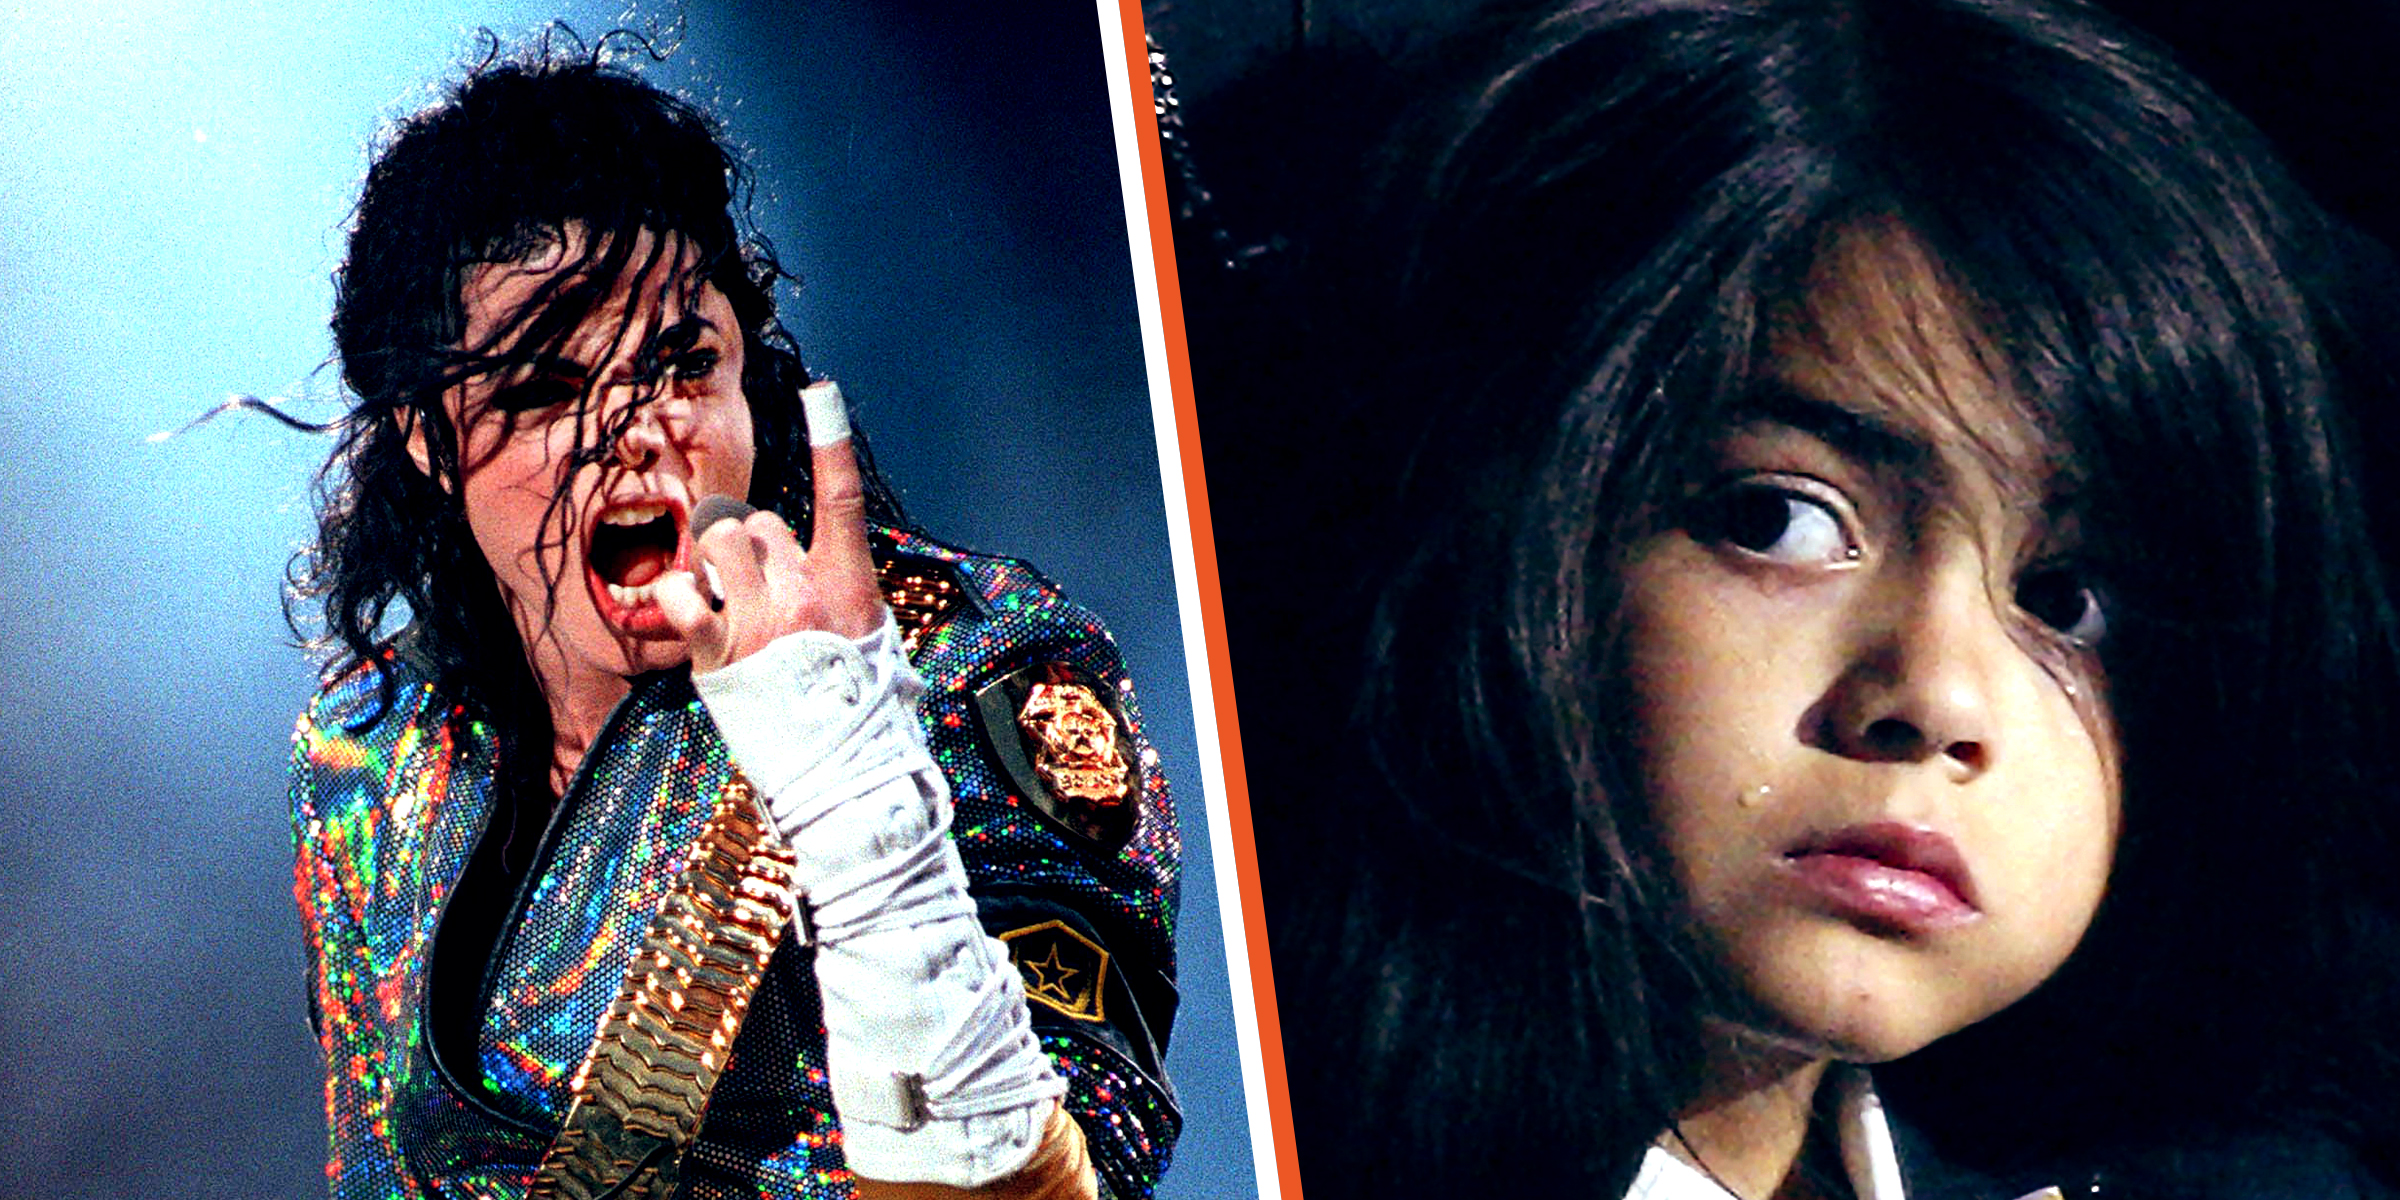 Michael Jackson | Blanket "Bigi" Jackson | Quelle: Getty Images